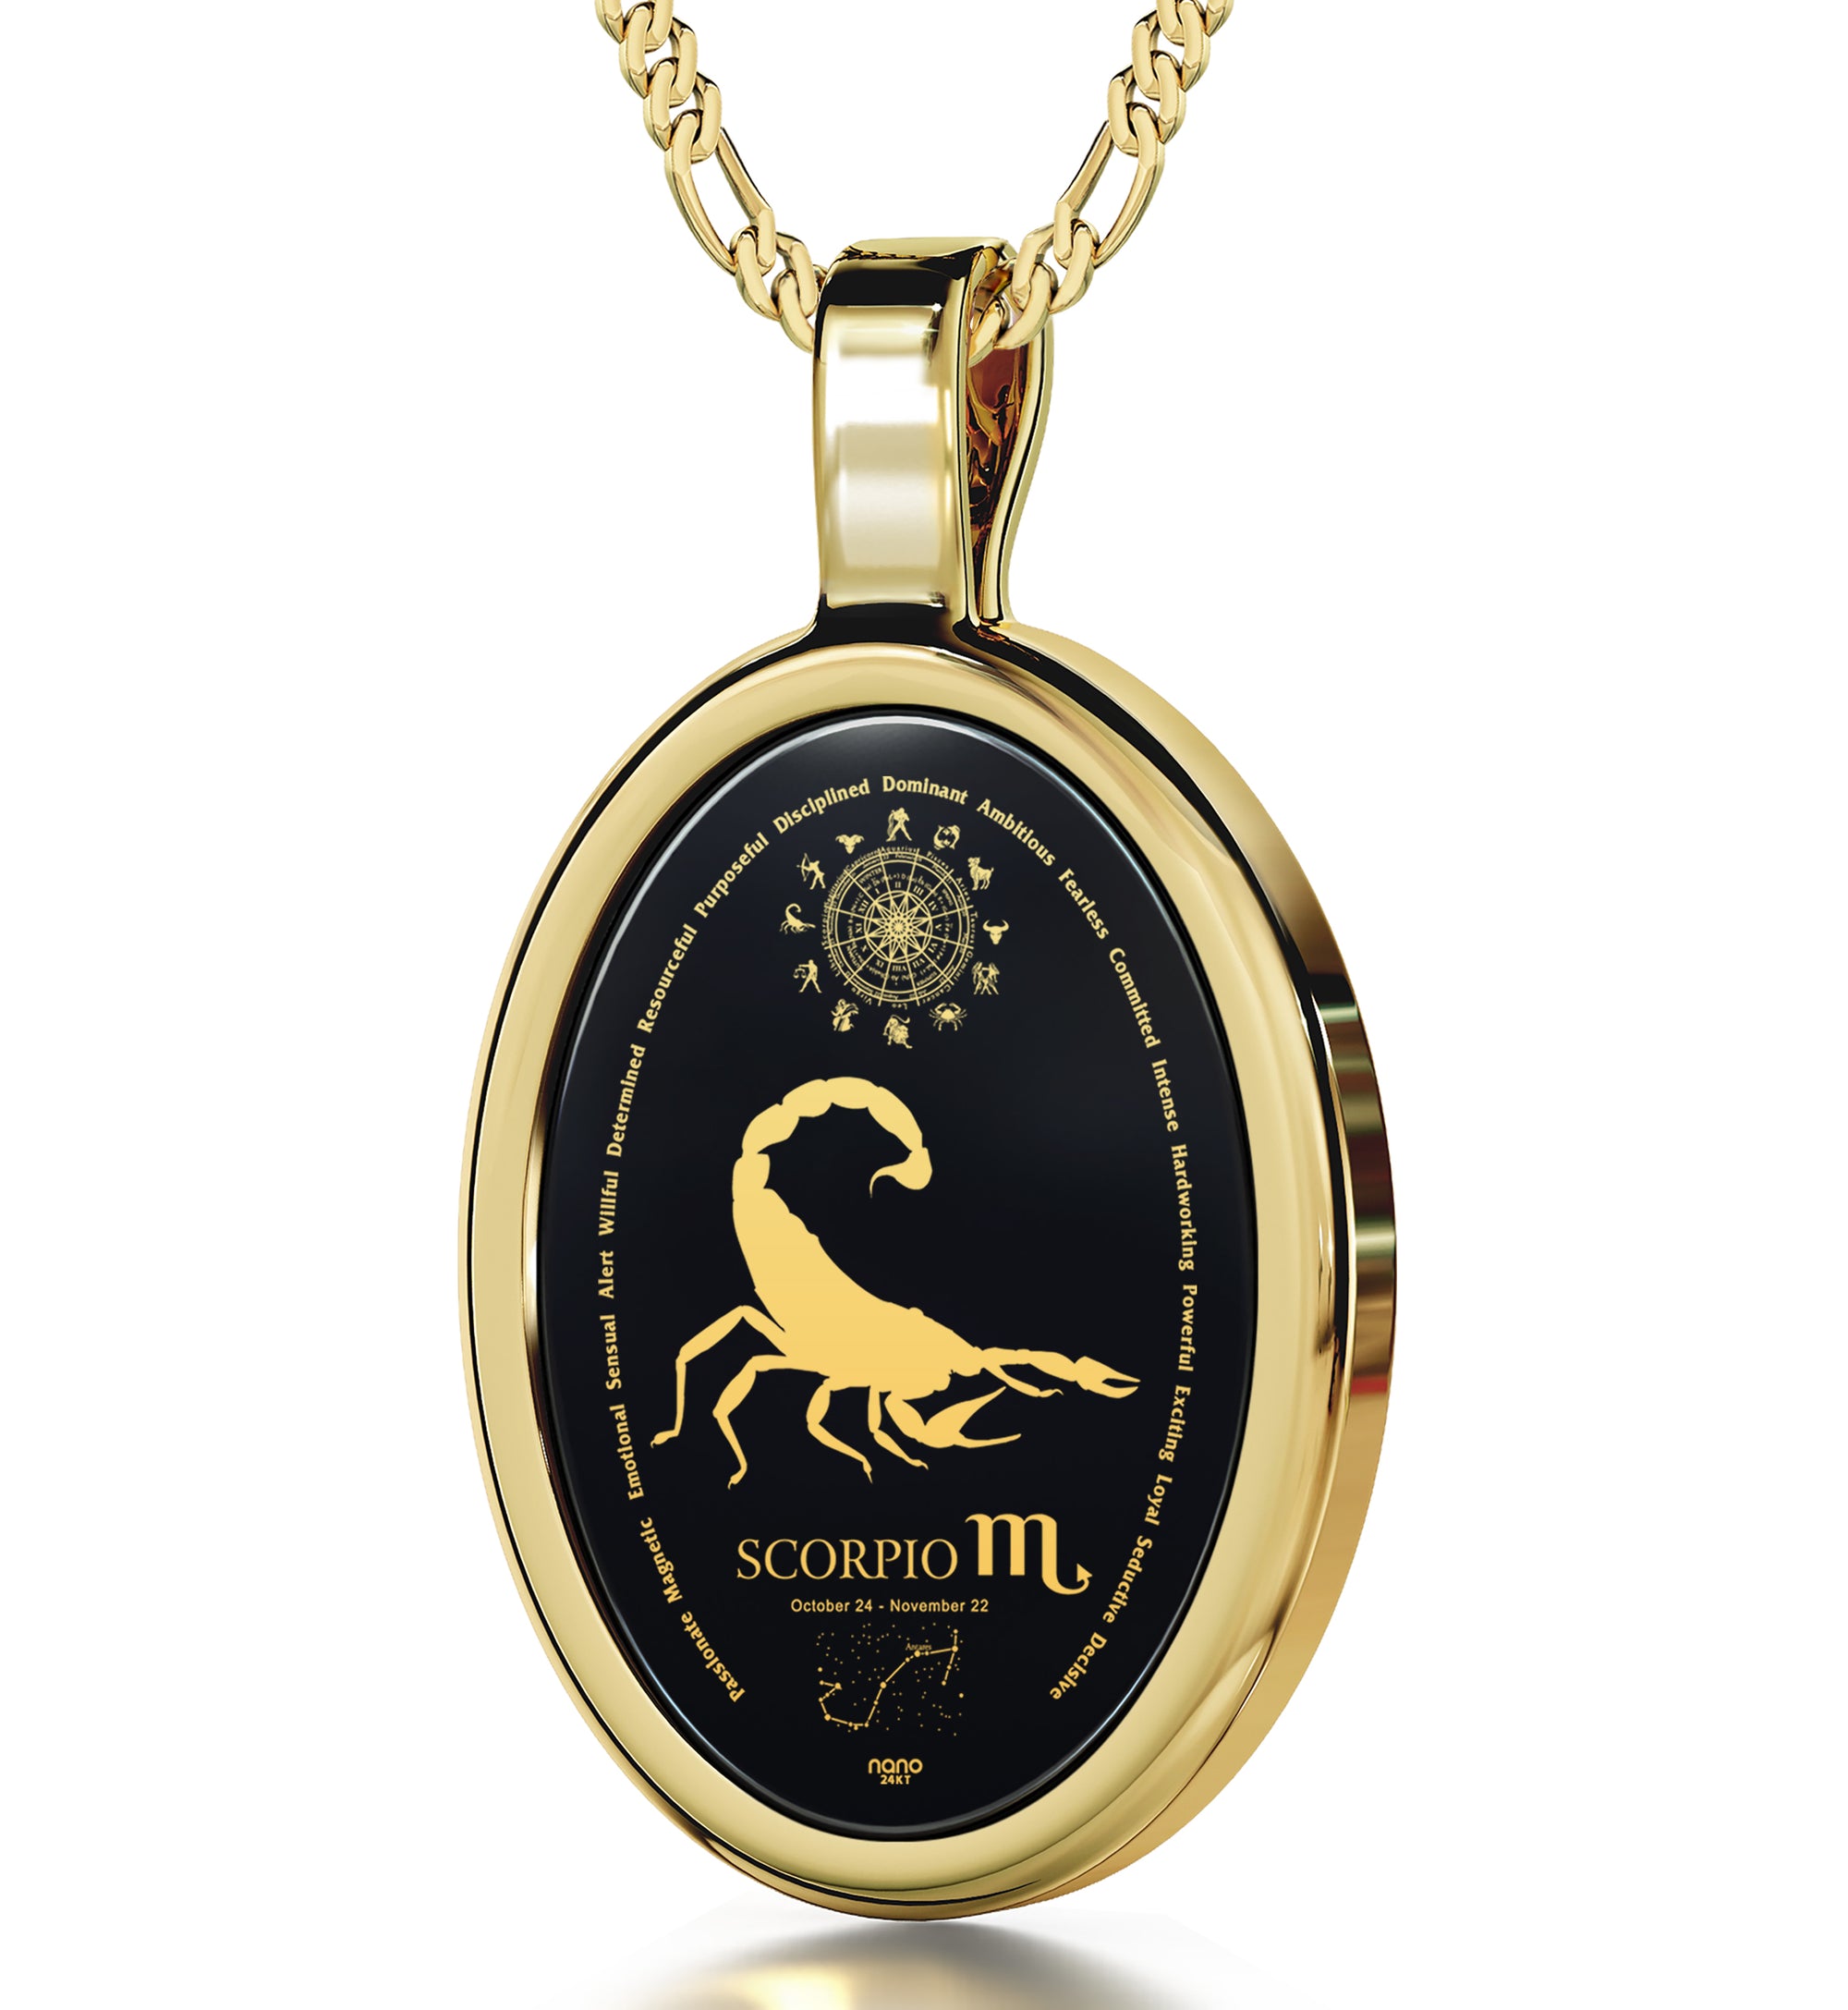 Zodiaque medal Scorpii (Scorpio) 18K yellow gold - Van Cleef & Arpels